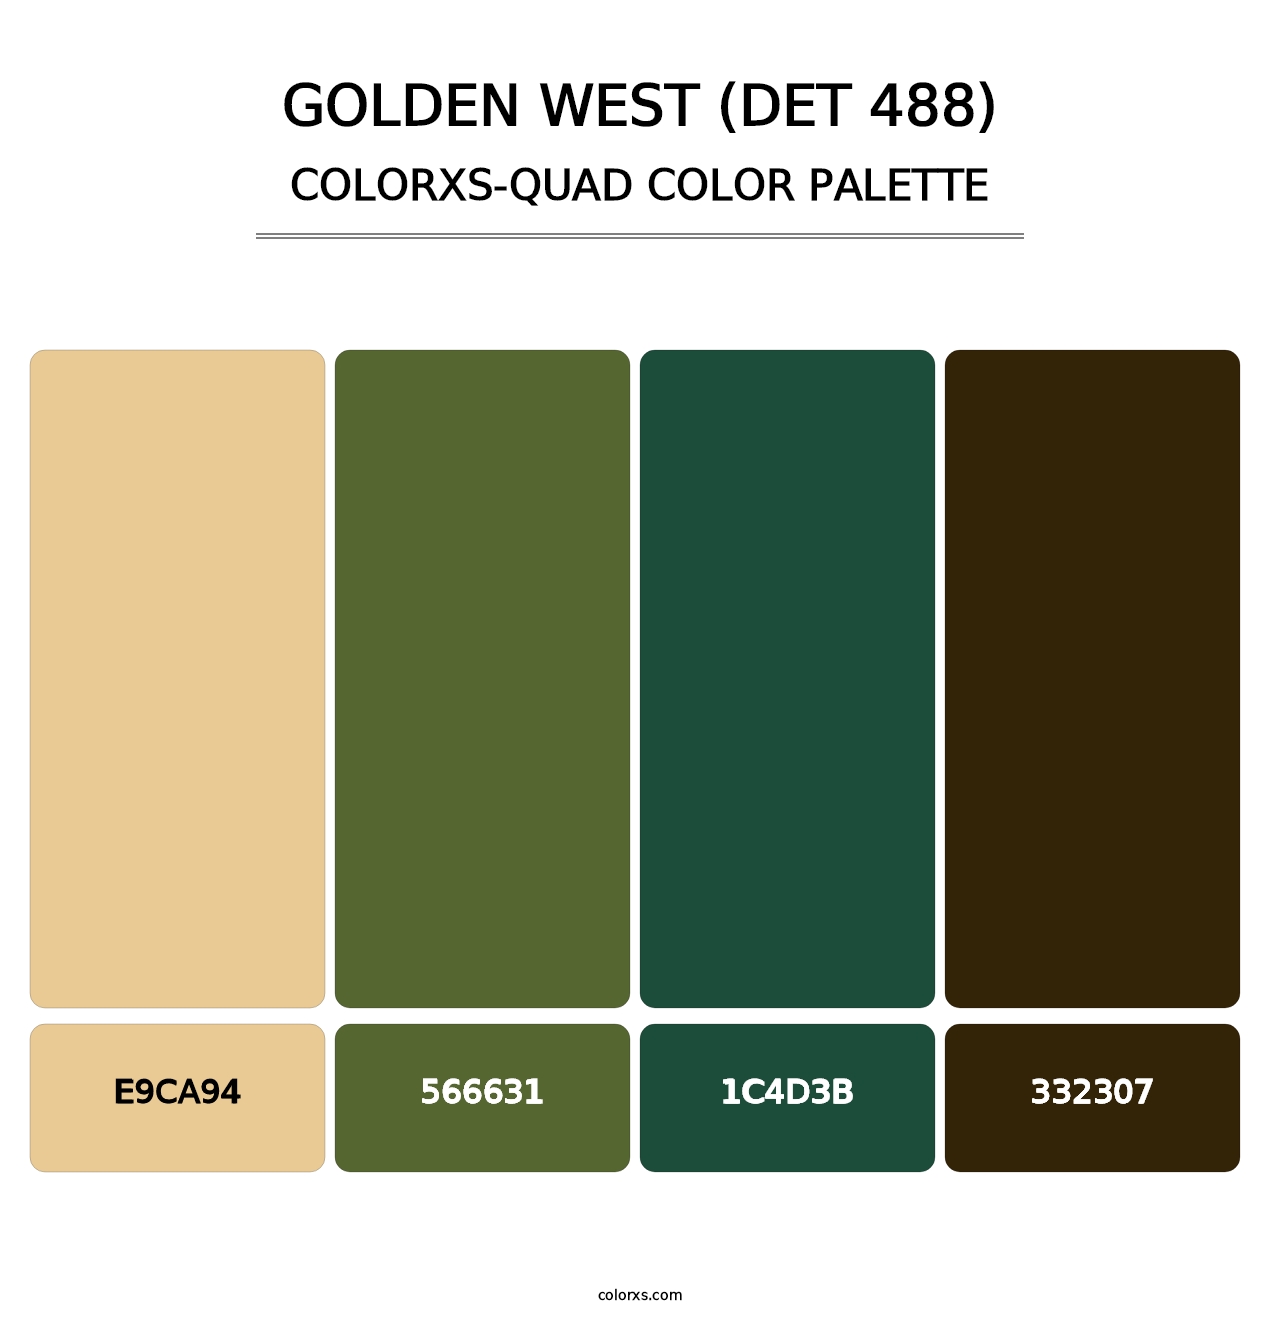 Golden West (DET 488) - Colorxs Quad Palette